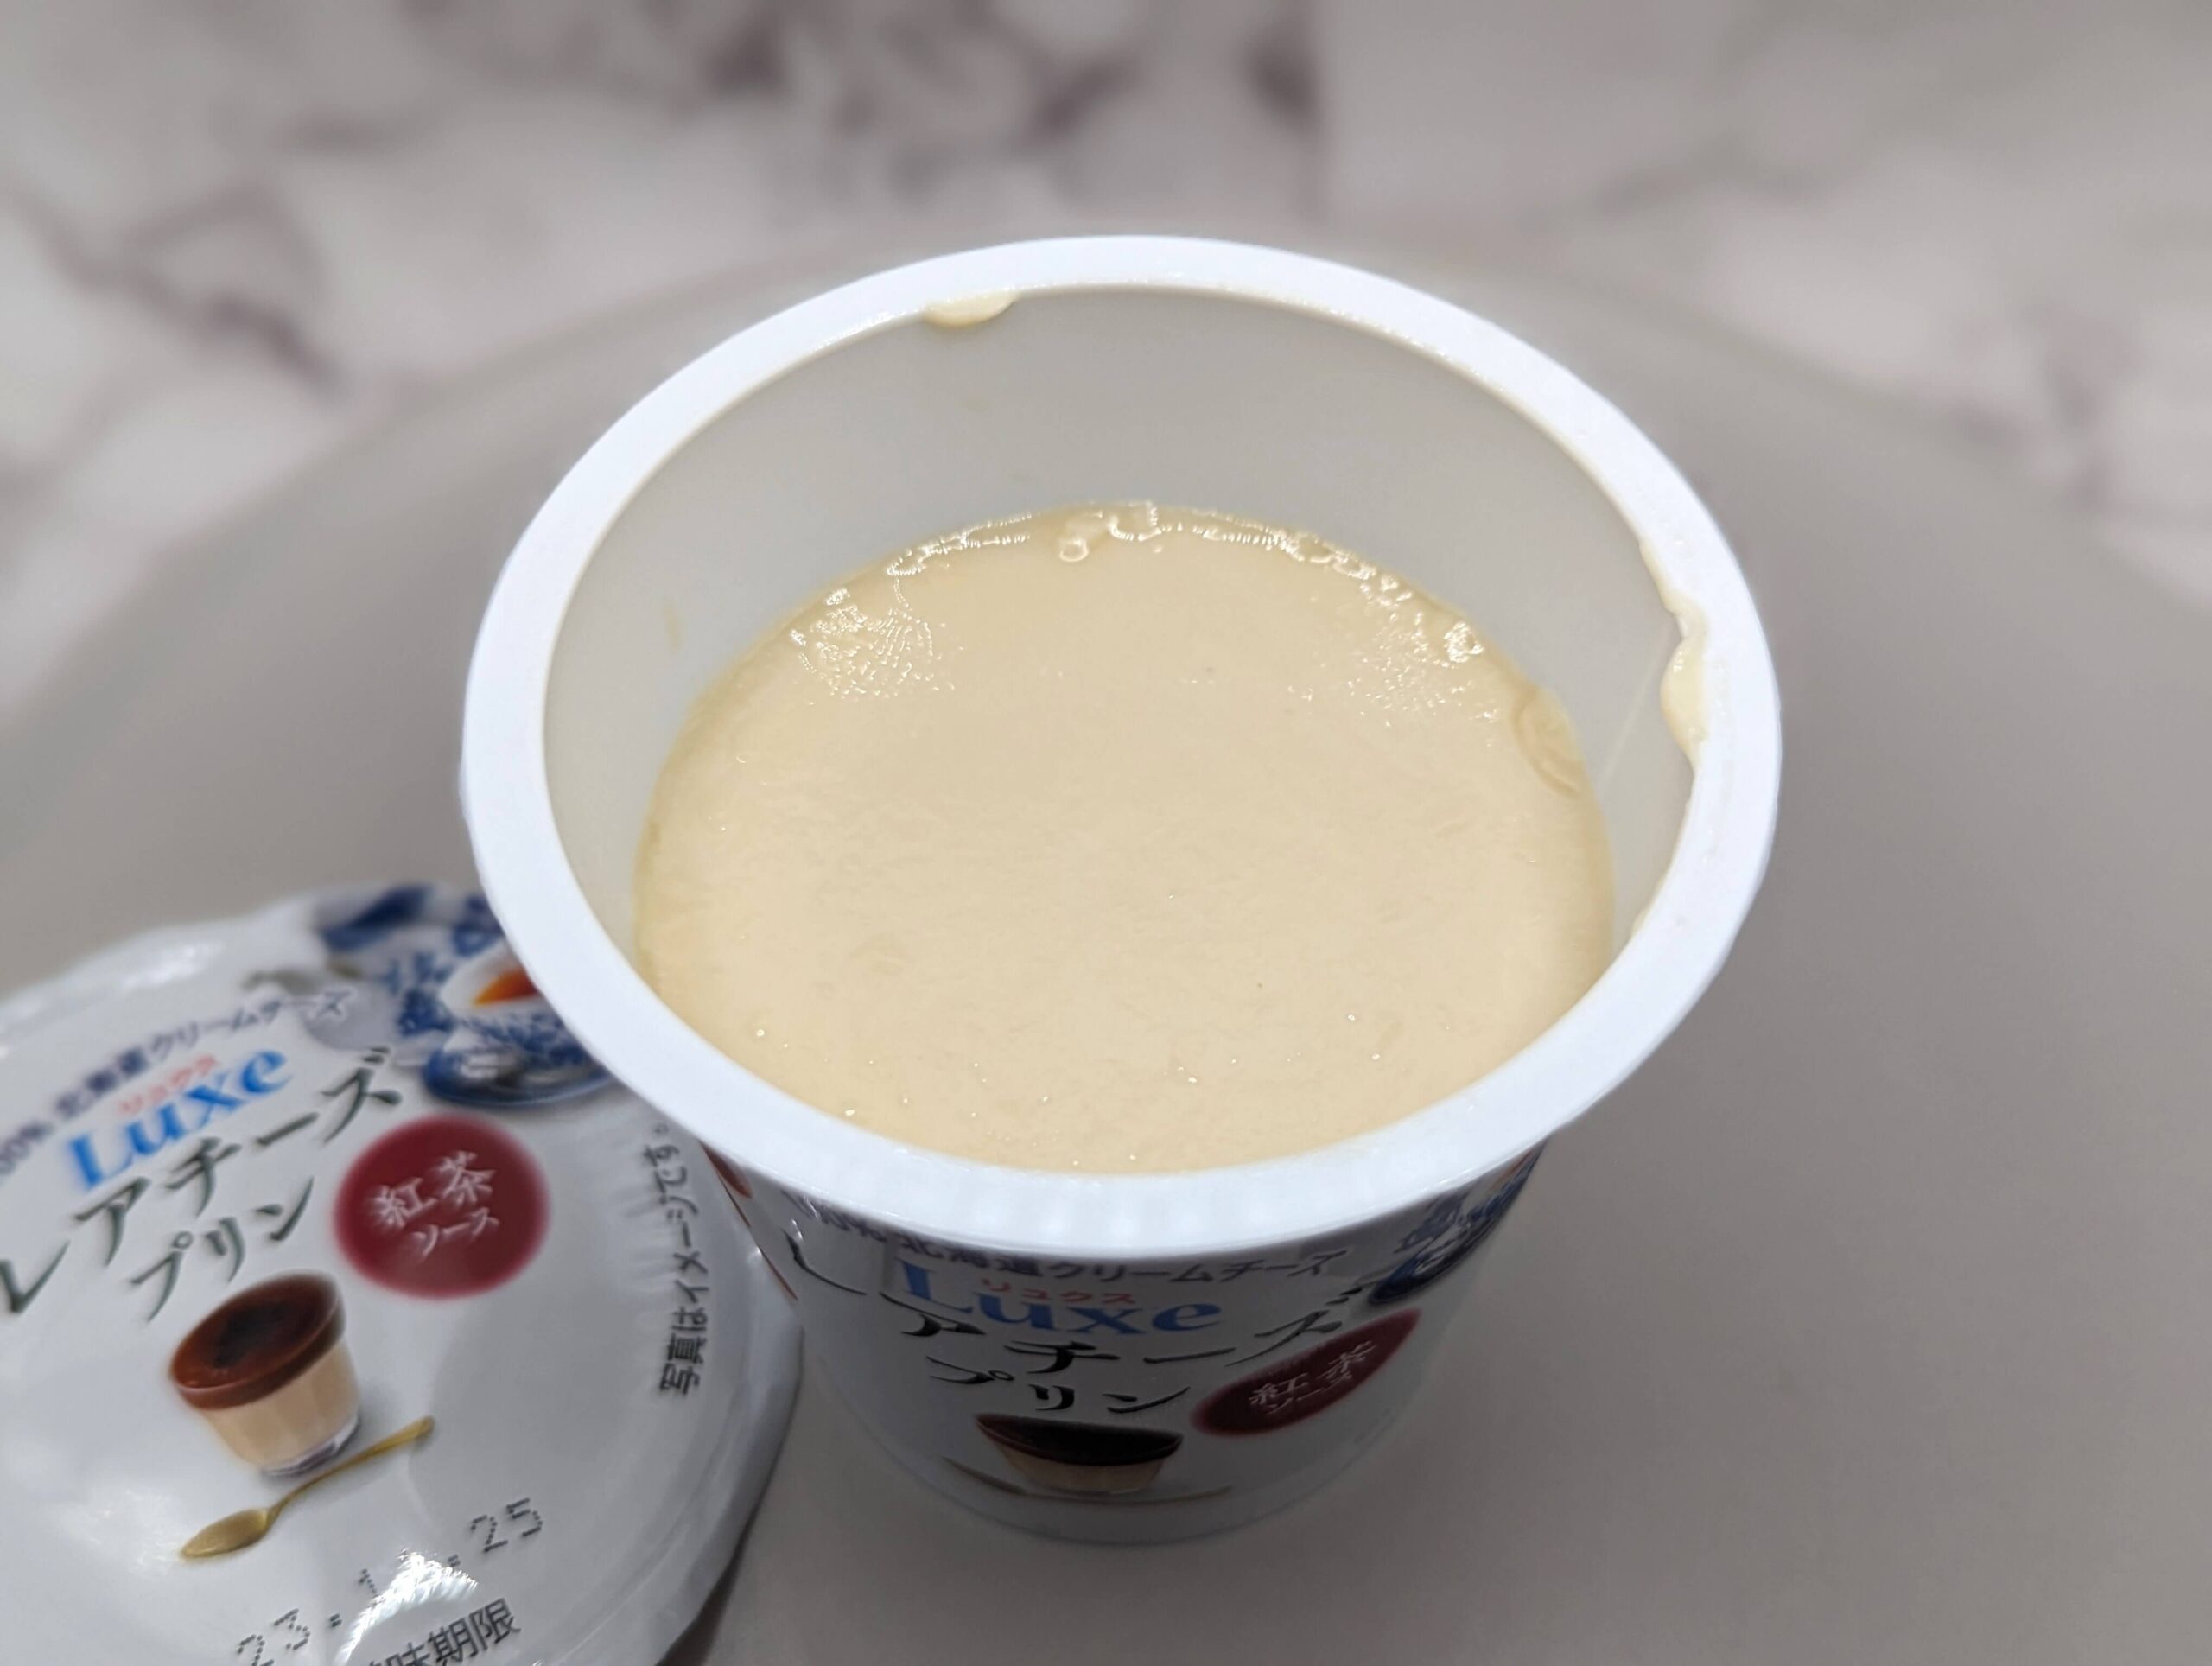 北海道乳業の「Luxeレアチーズプリン 紅茶ソース」の写真 (4)